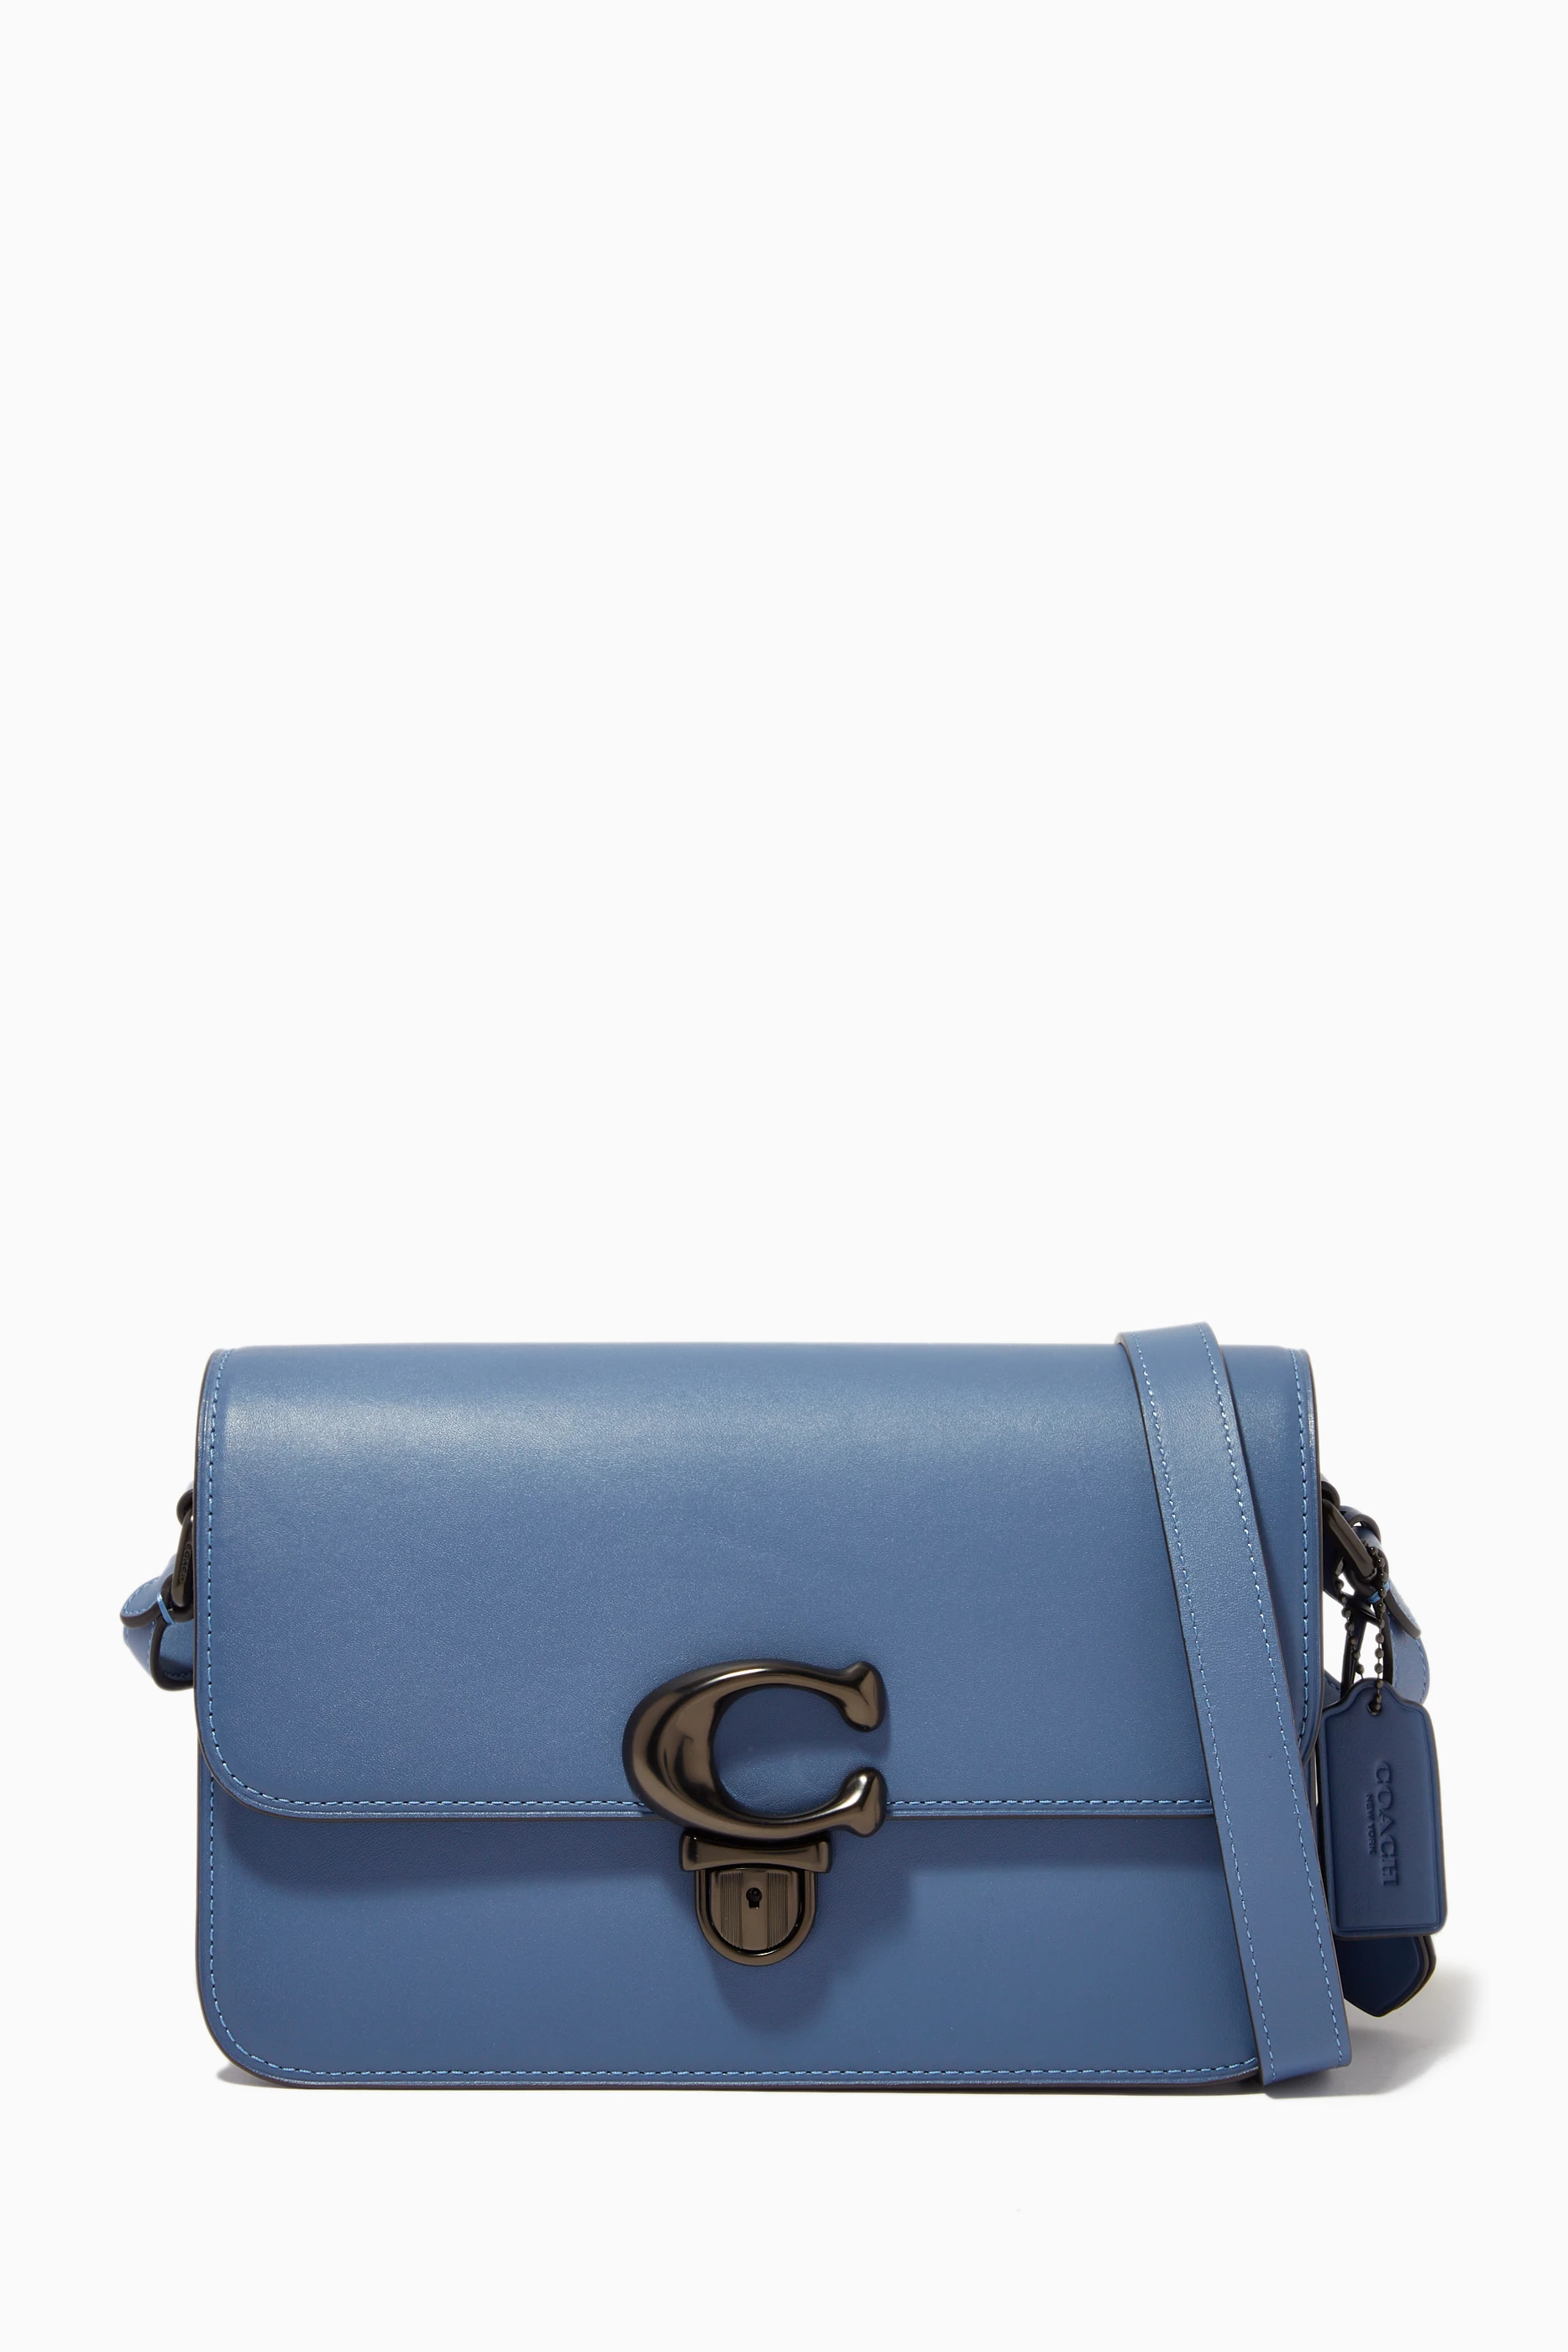 Courrèges Leather Shoulder Bag - Blue Shoulder Bags, Handbags - WCOUR25989